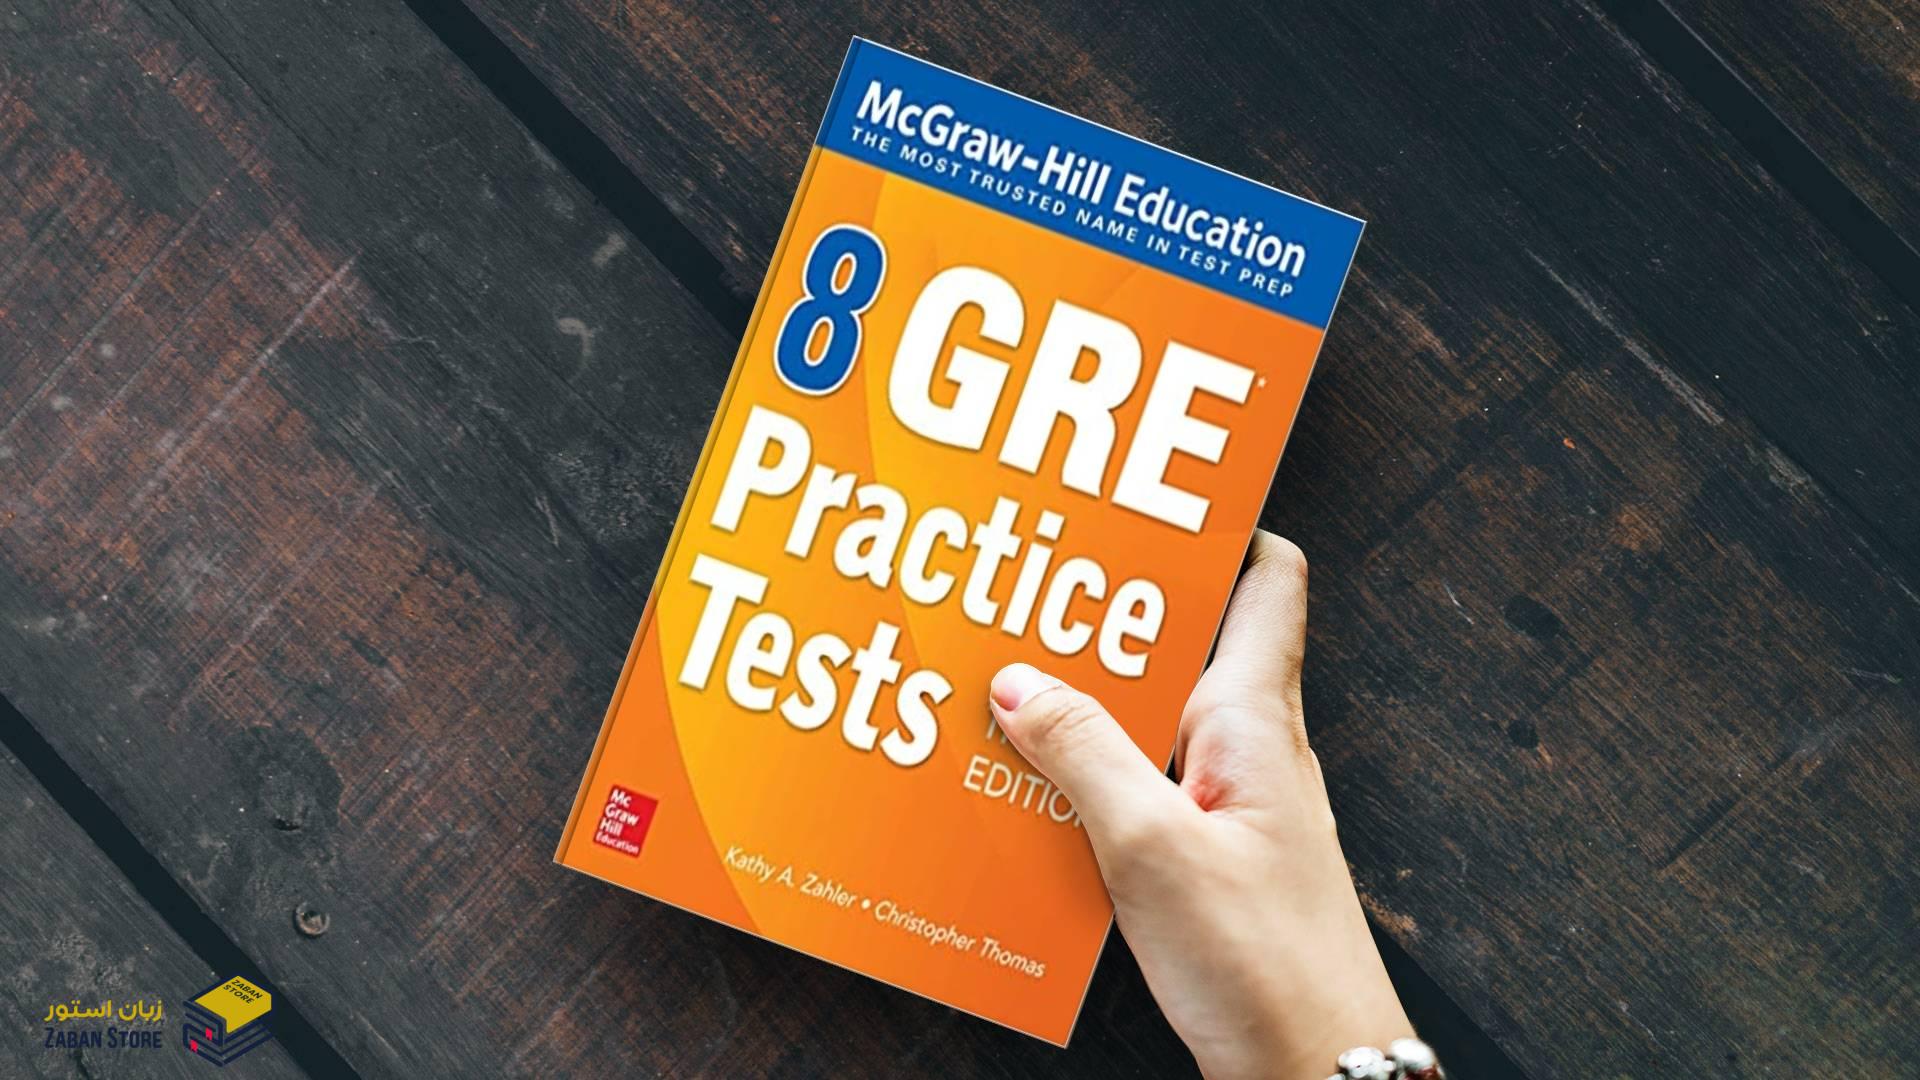 خرید کتاب آزمون زبان جی ار ای | McGraw Hill Education 8 GRE Practice Tests Third Edition | جی ار ای پرکتیس تست ویرایش سوم